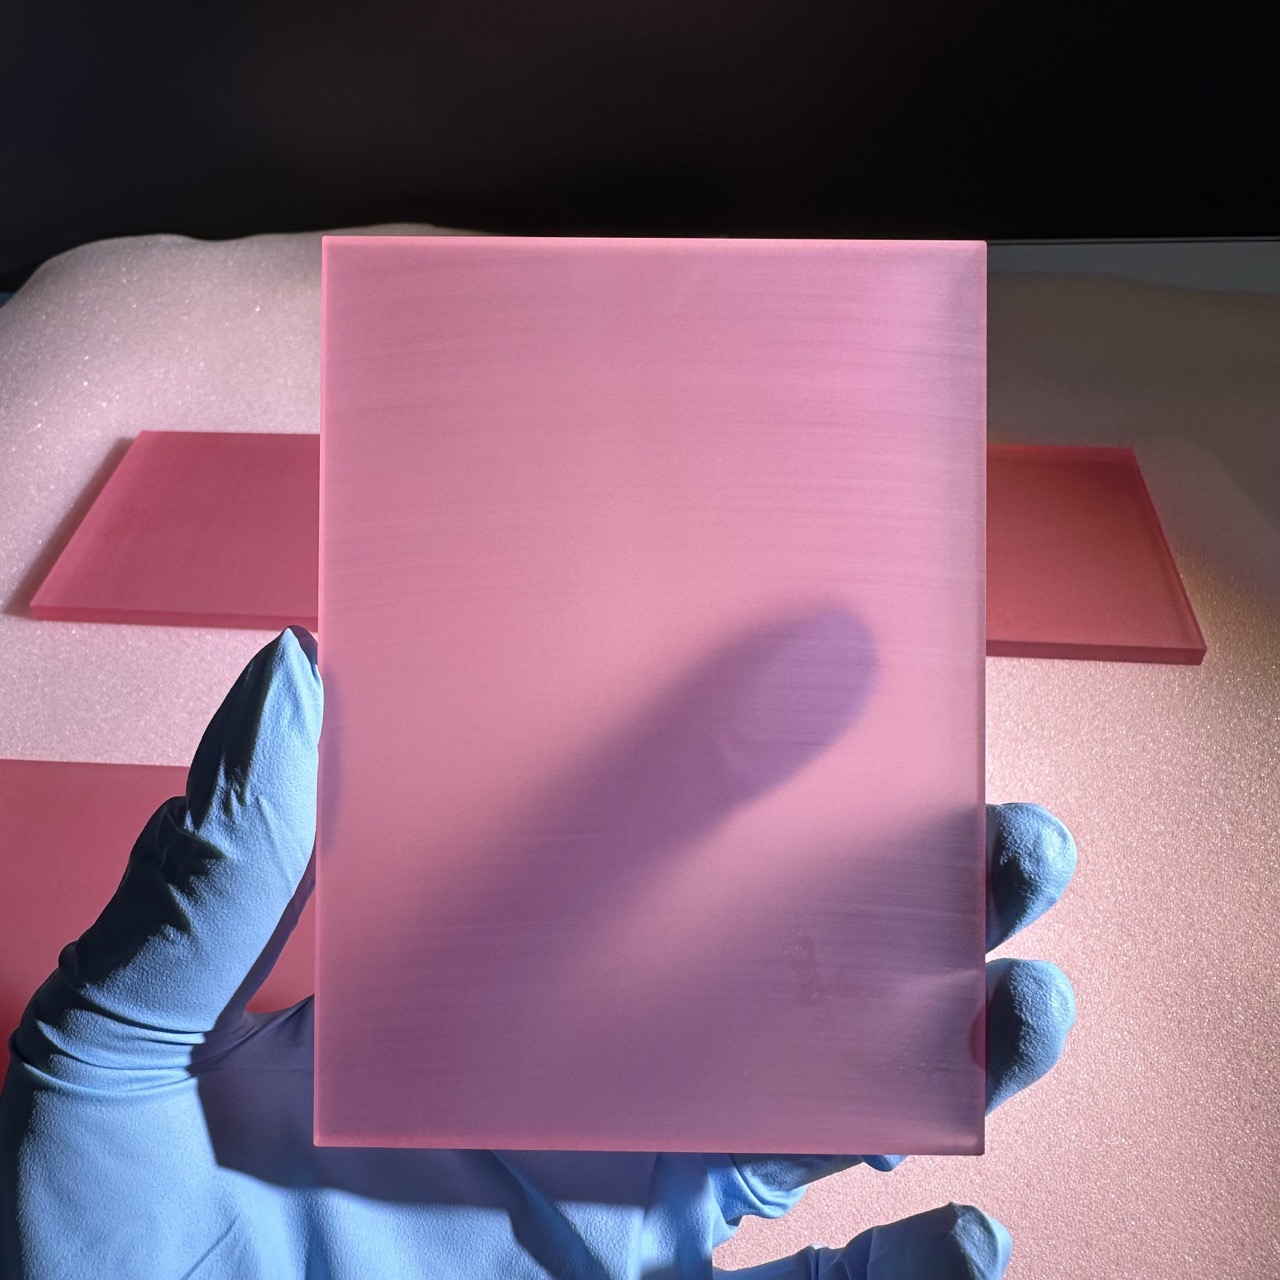 Oerflakferwurkingsmetoade fan titanium-gedopte saffierkristal laserstaven (2)